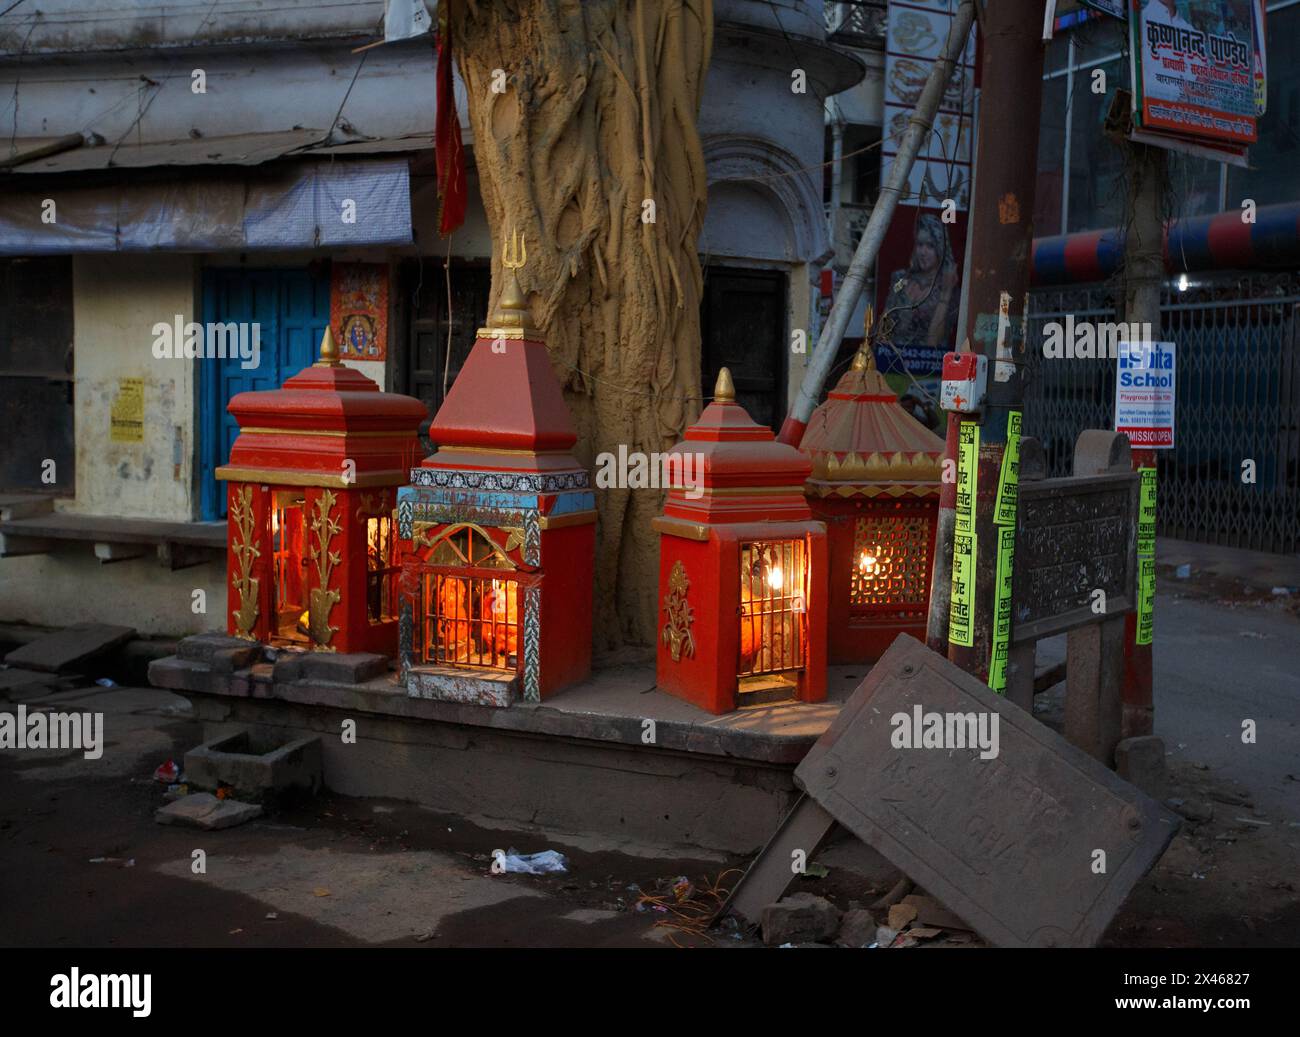 Vier kleine Schreine mit Beleuchtung neben einem großen Baumstamm am Straßenrand in Varanasi, Indien. Stockfoto